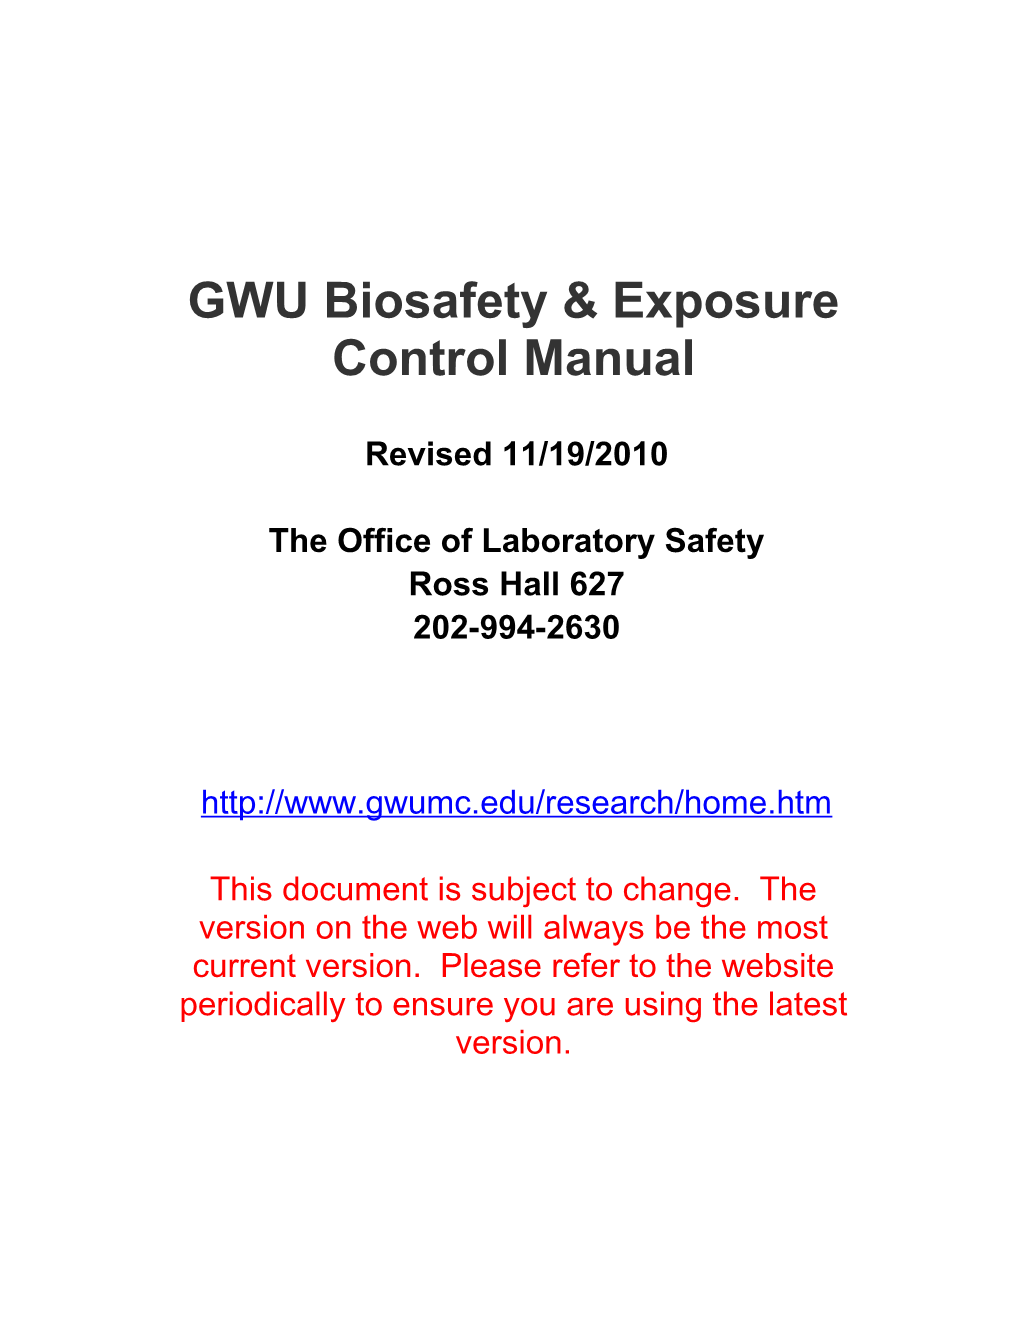 GWU Biosafety Manual